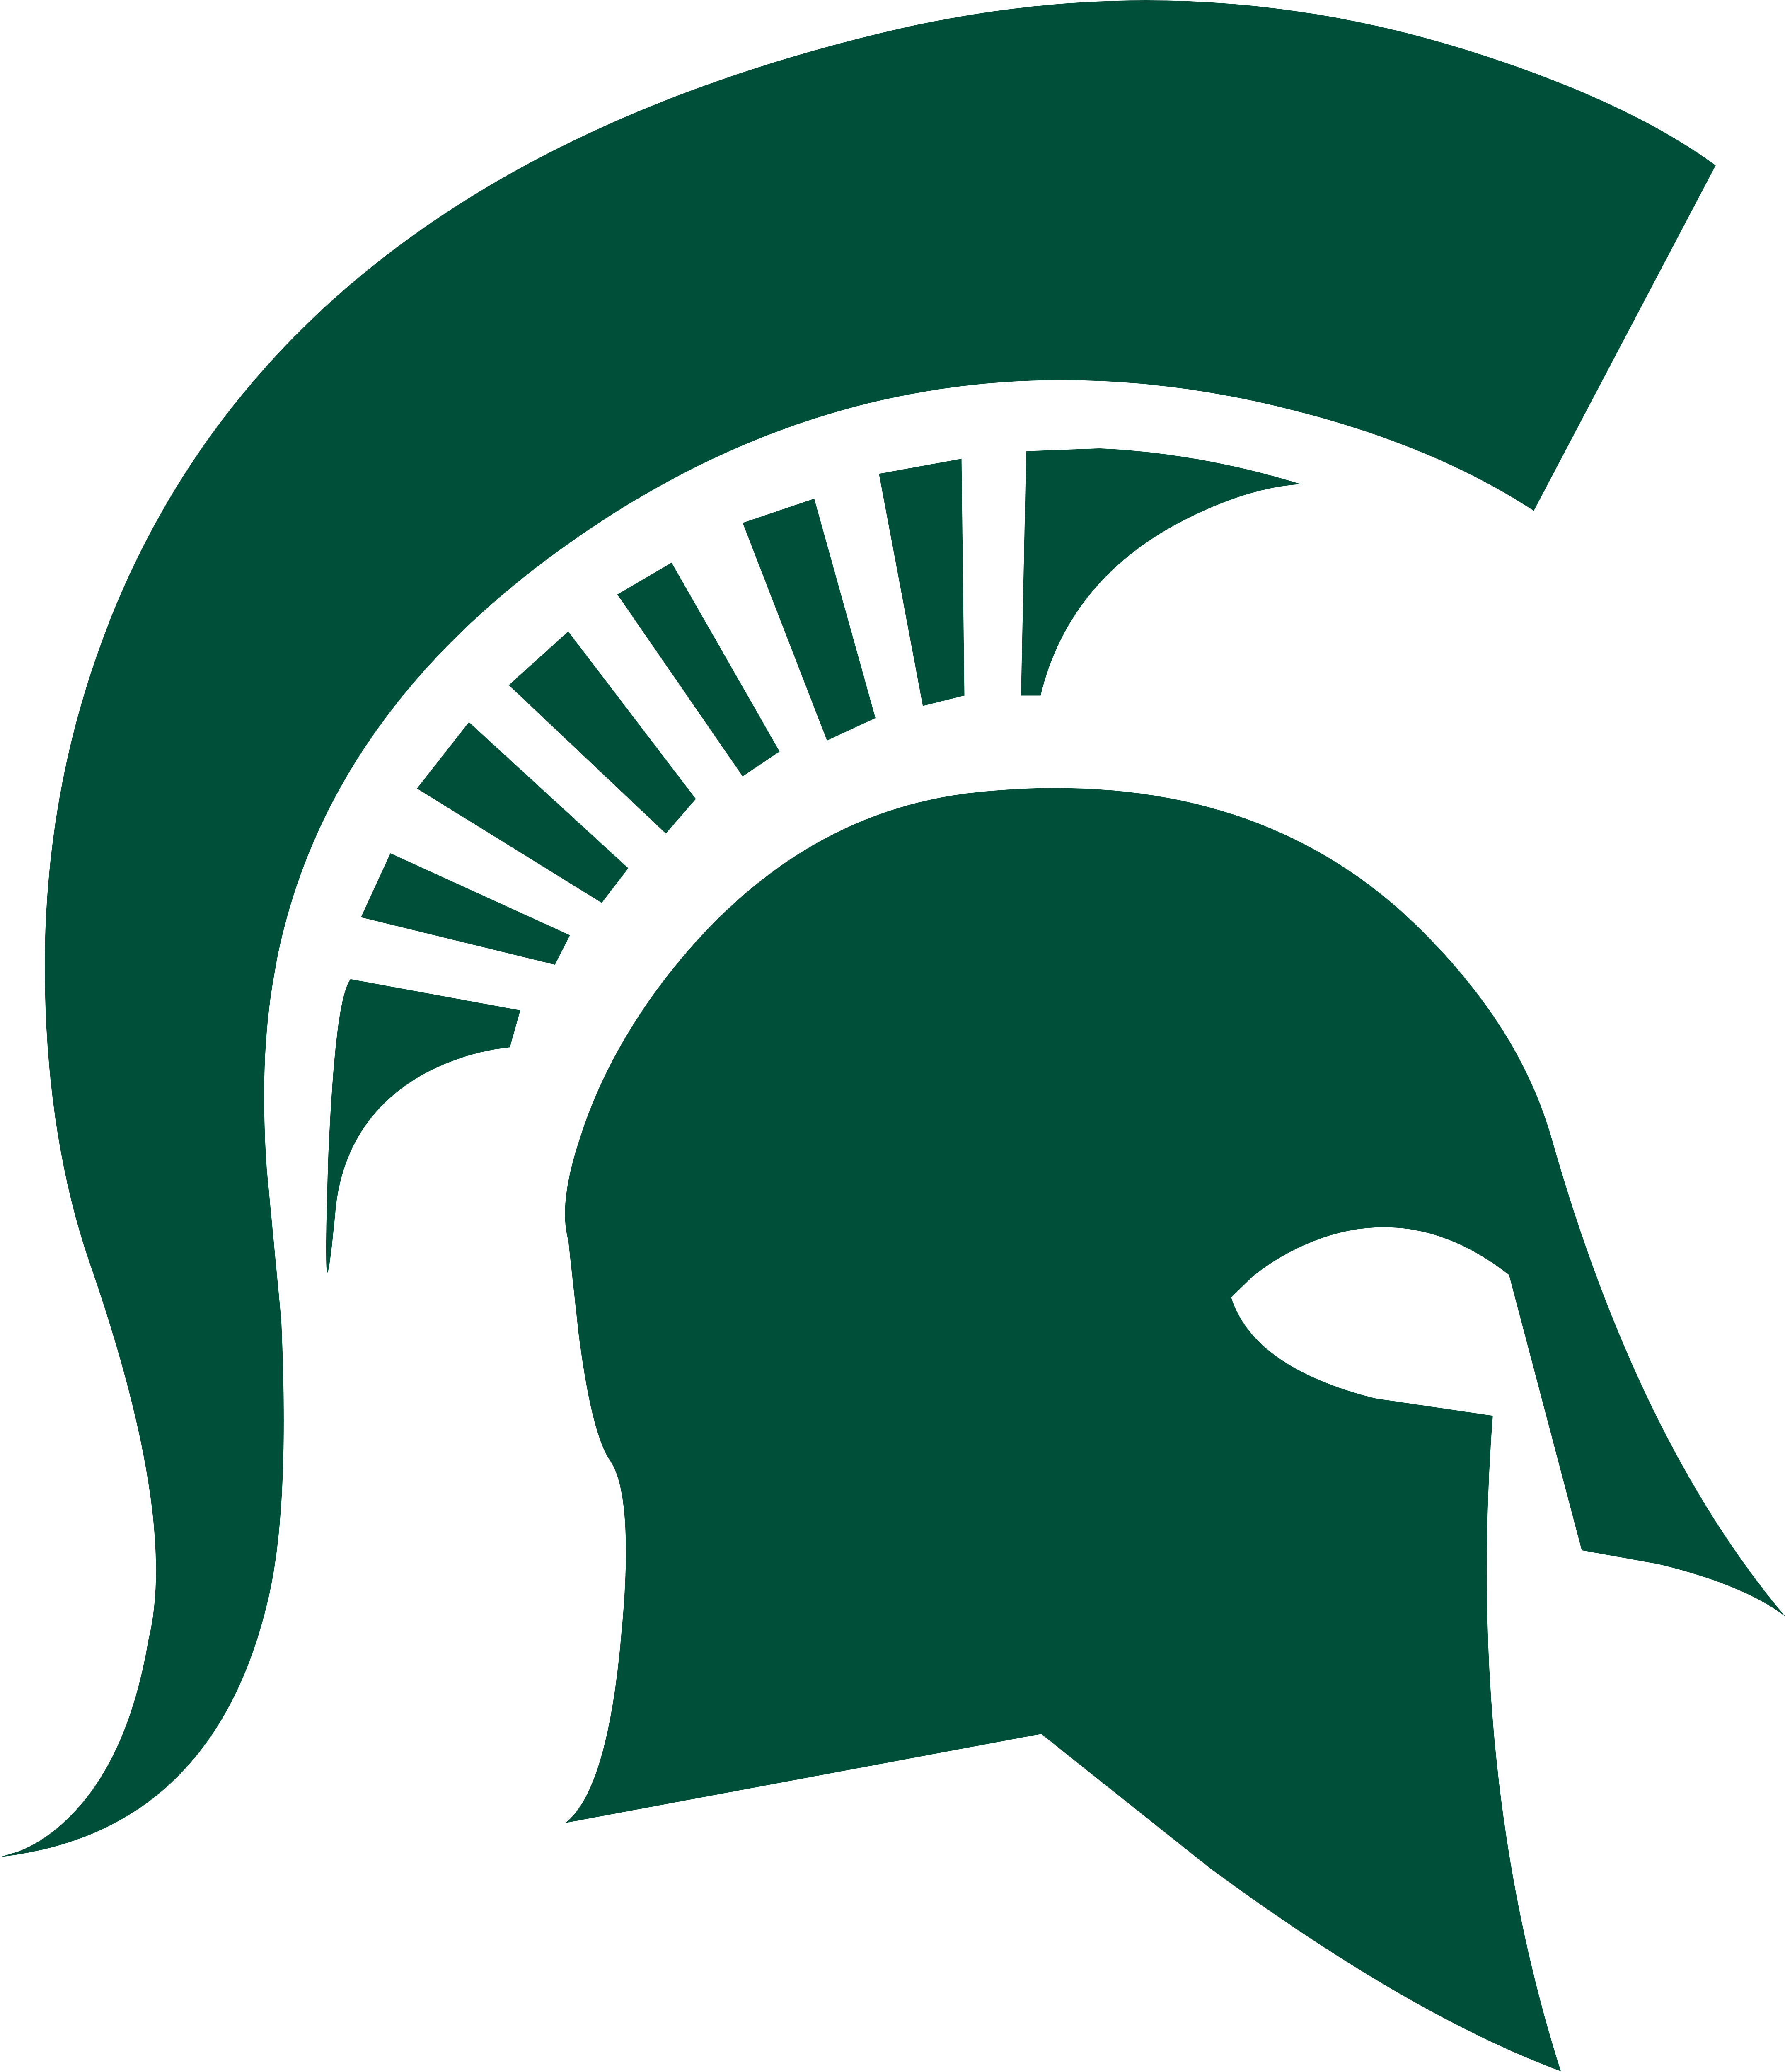 Michigan State University – Logos Download